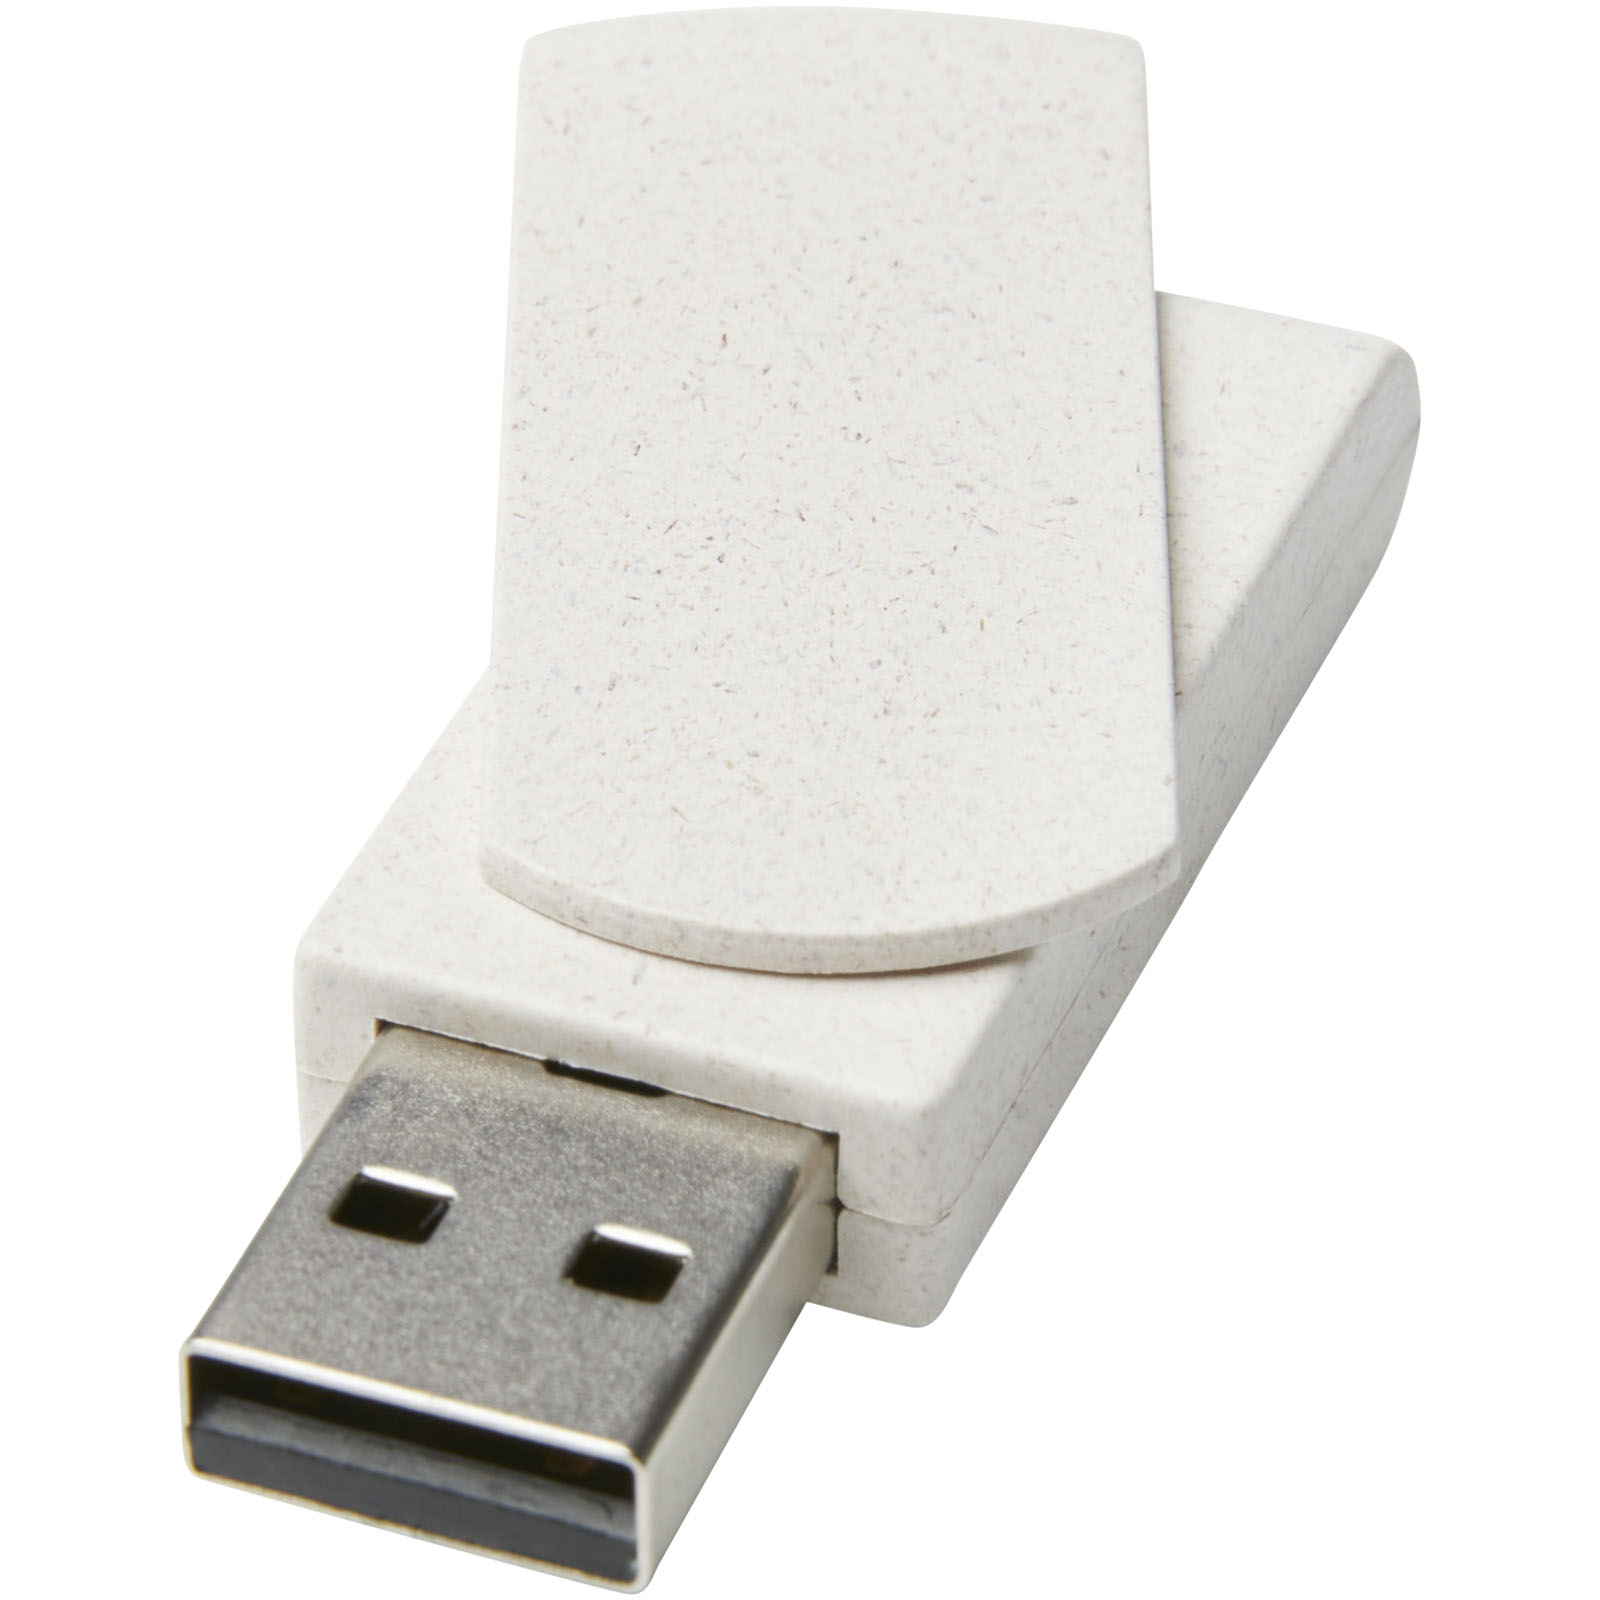 Chiavetta USB di paglia di grano - San Vito al Tagliamento